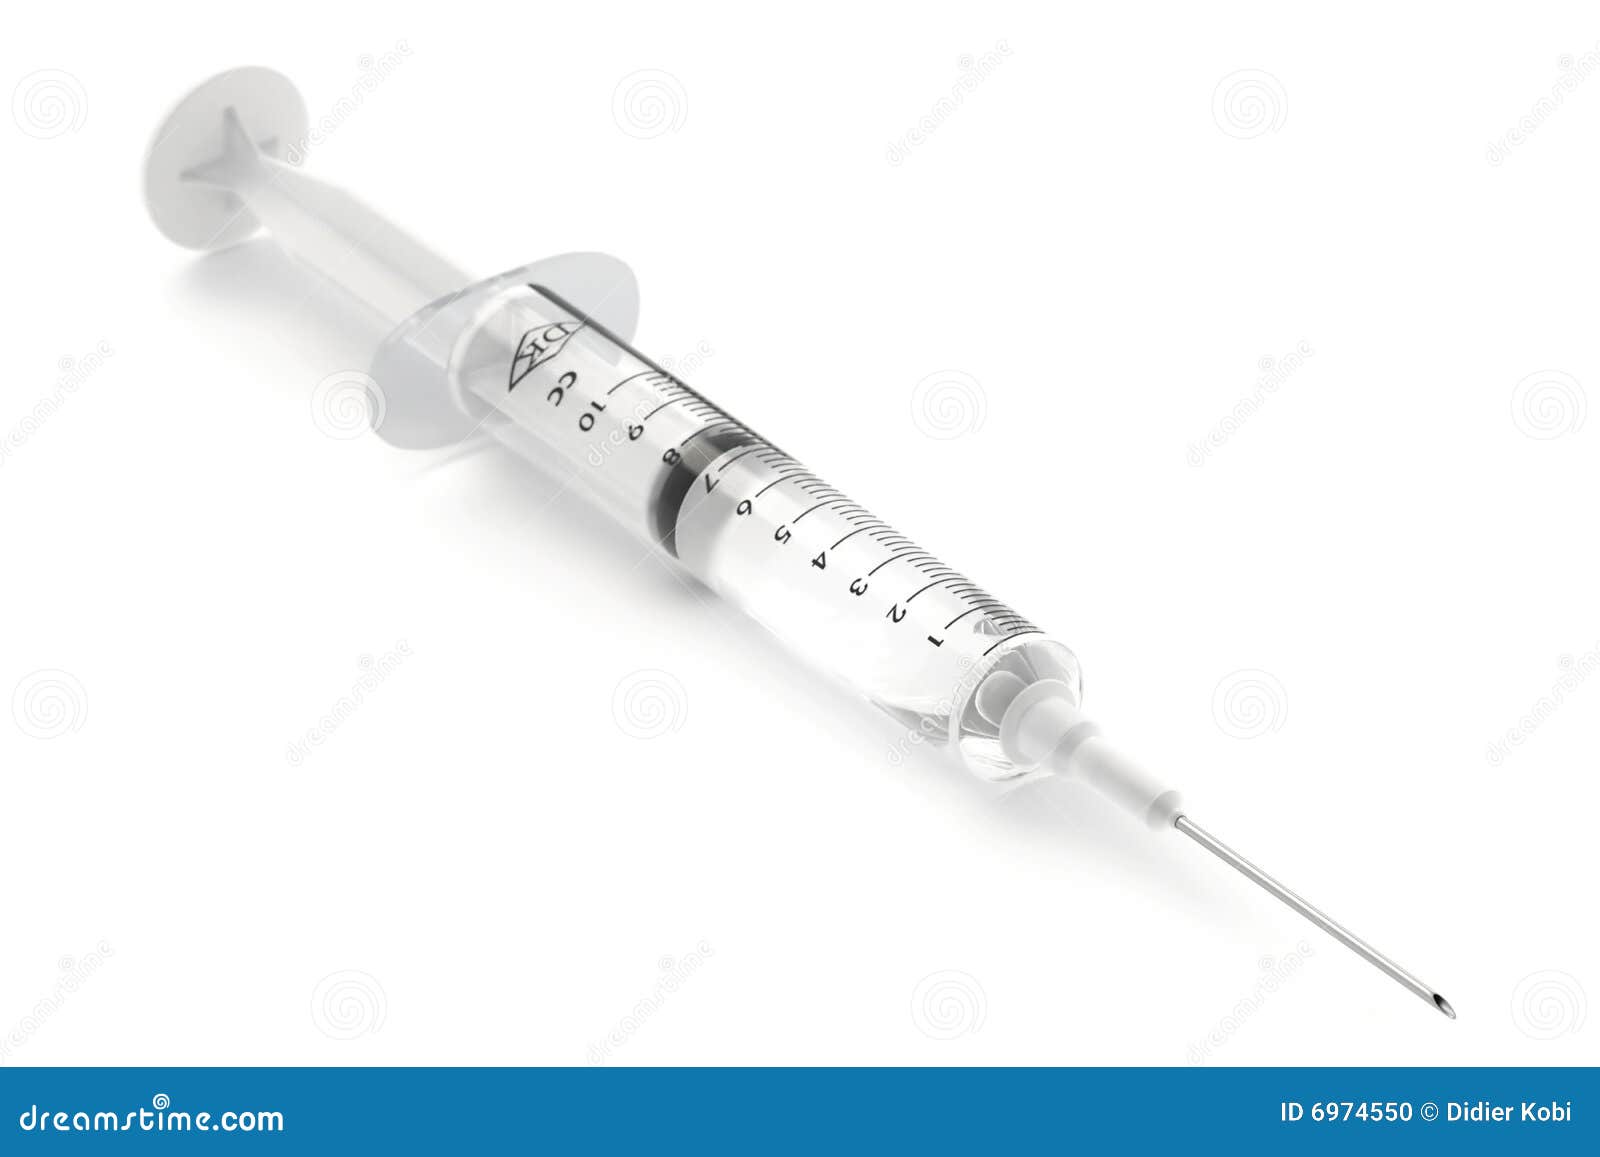 syringe on white